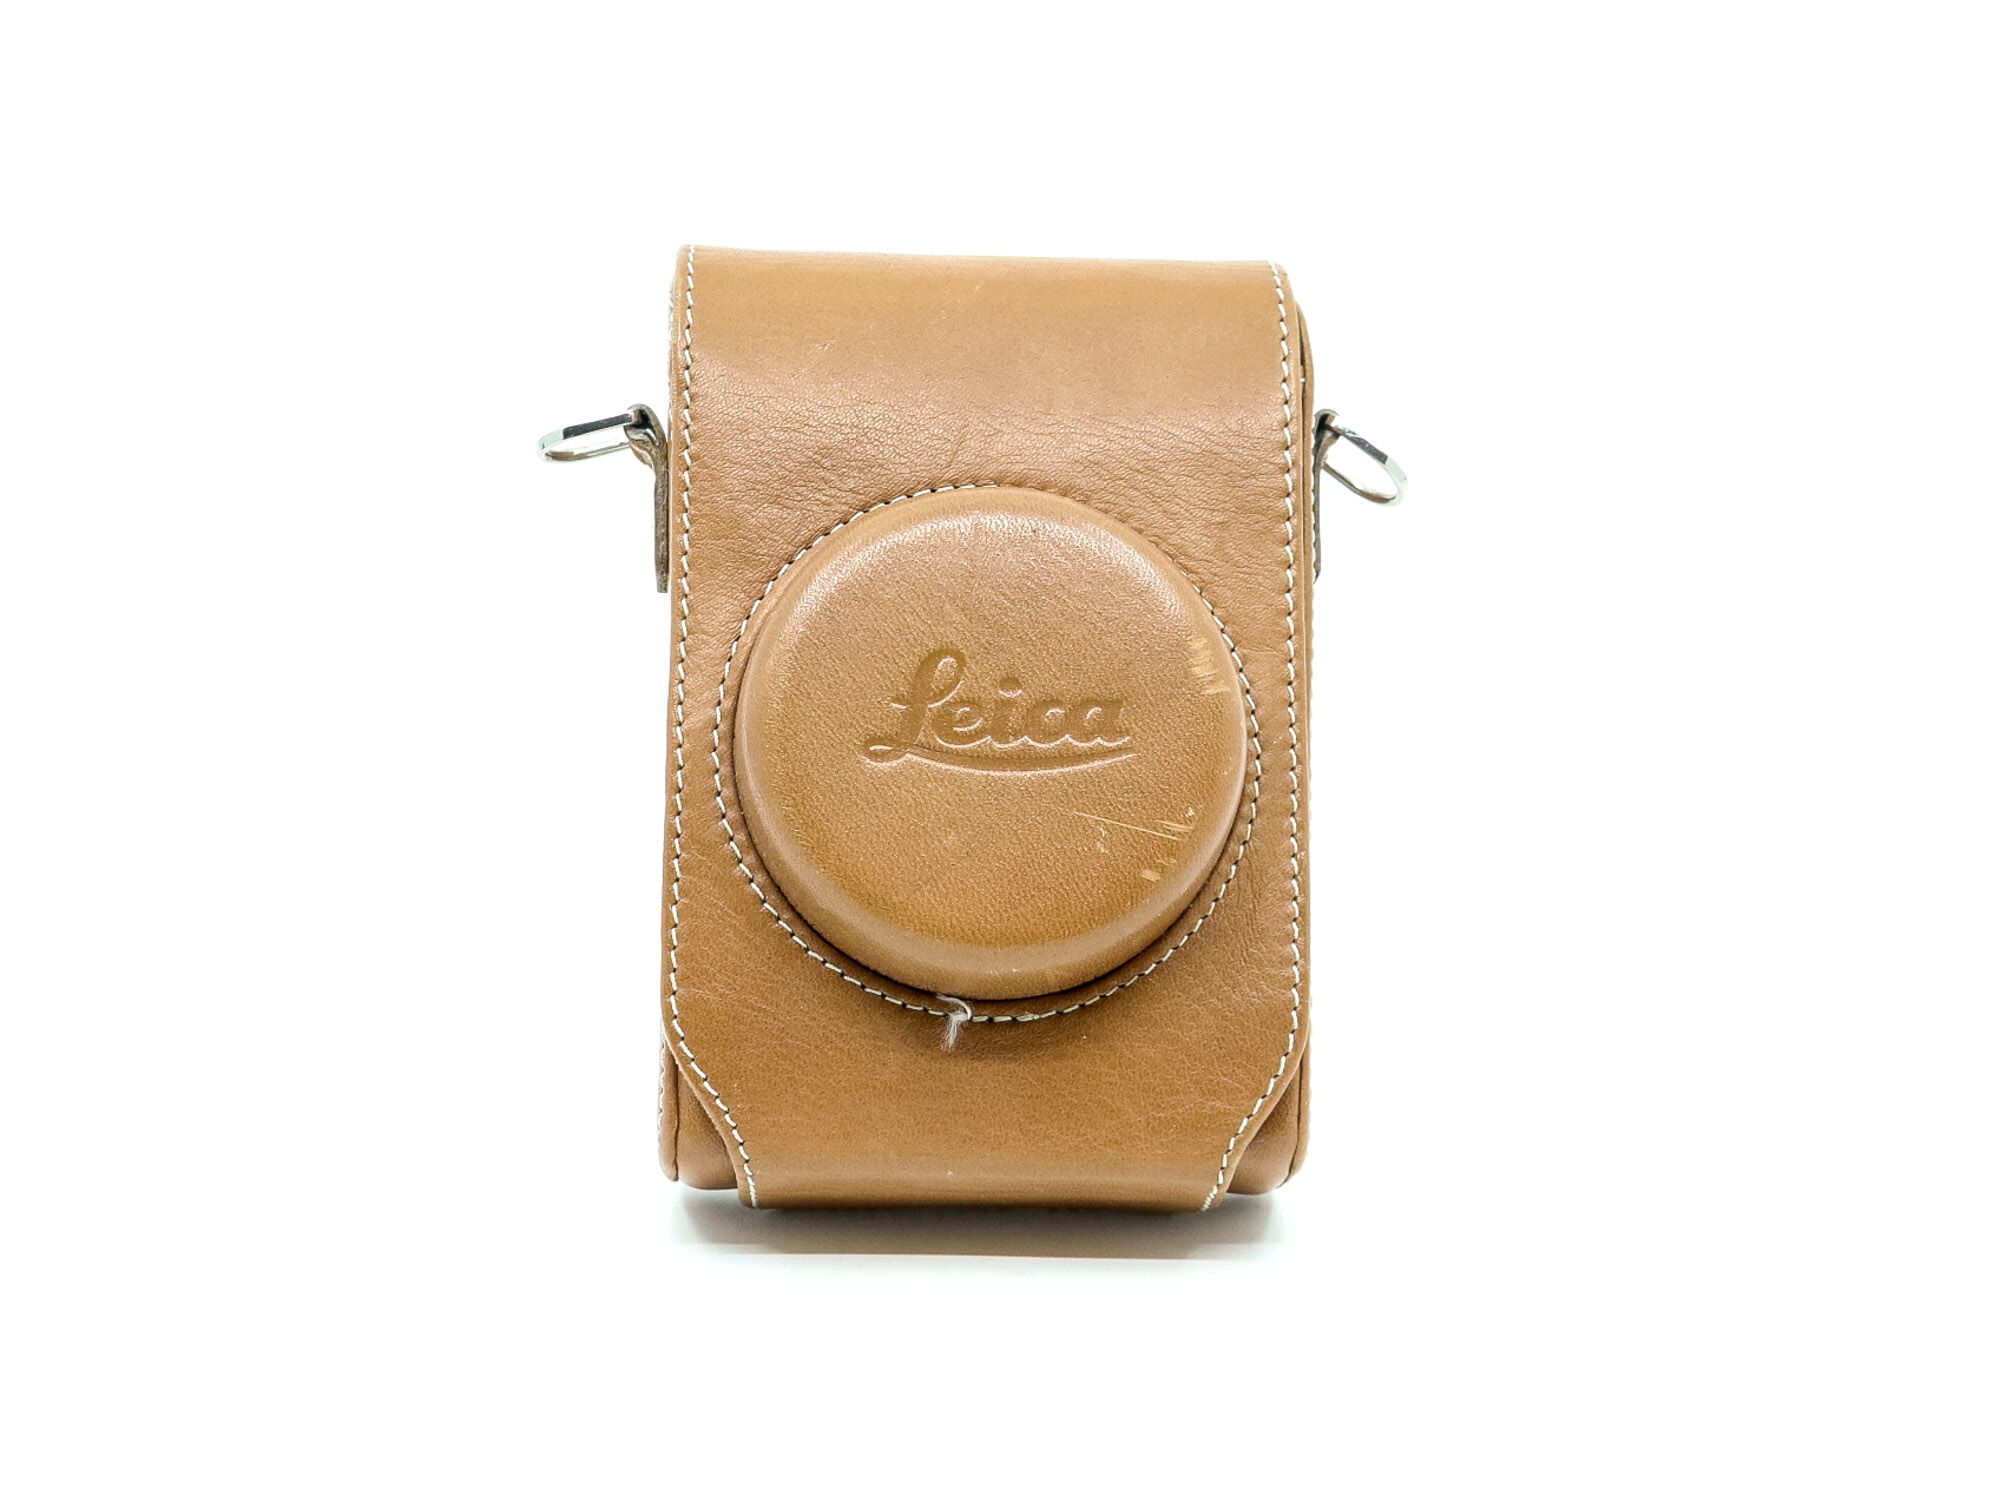 leica d-lux 6 leather case (condition: excellent)